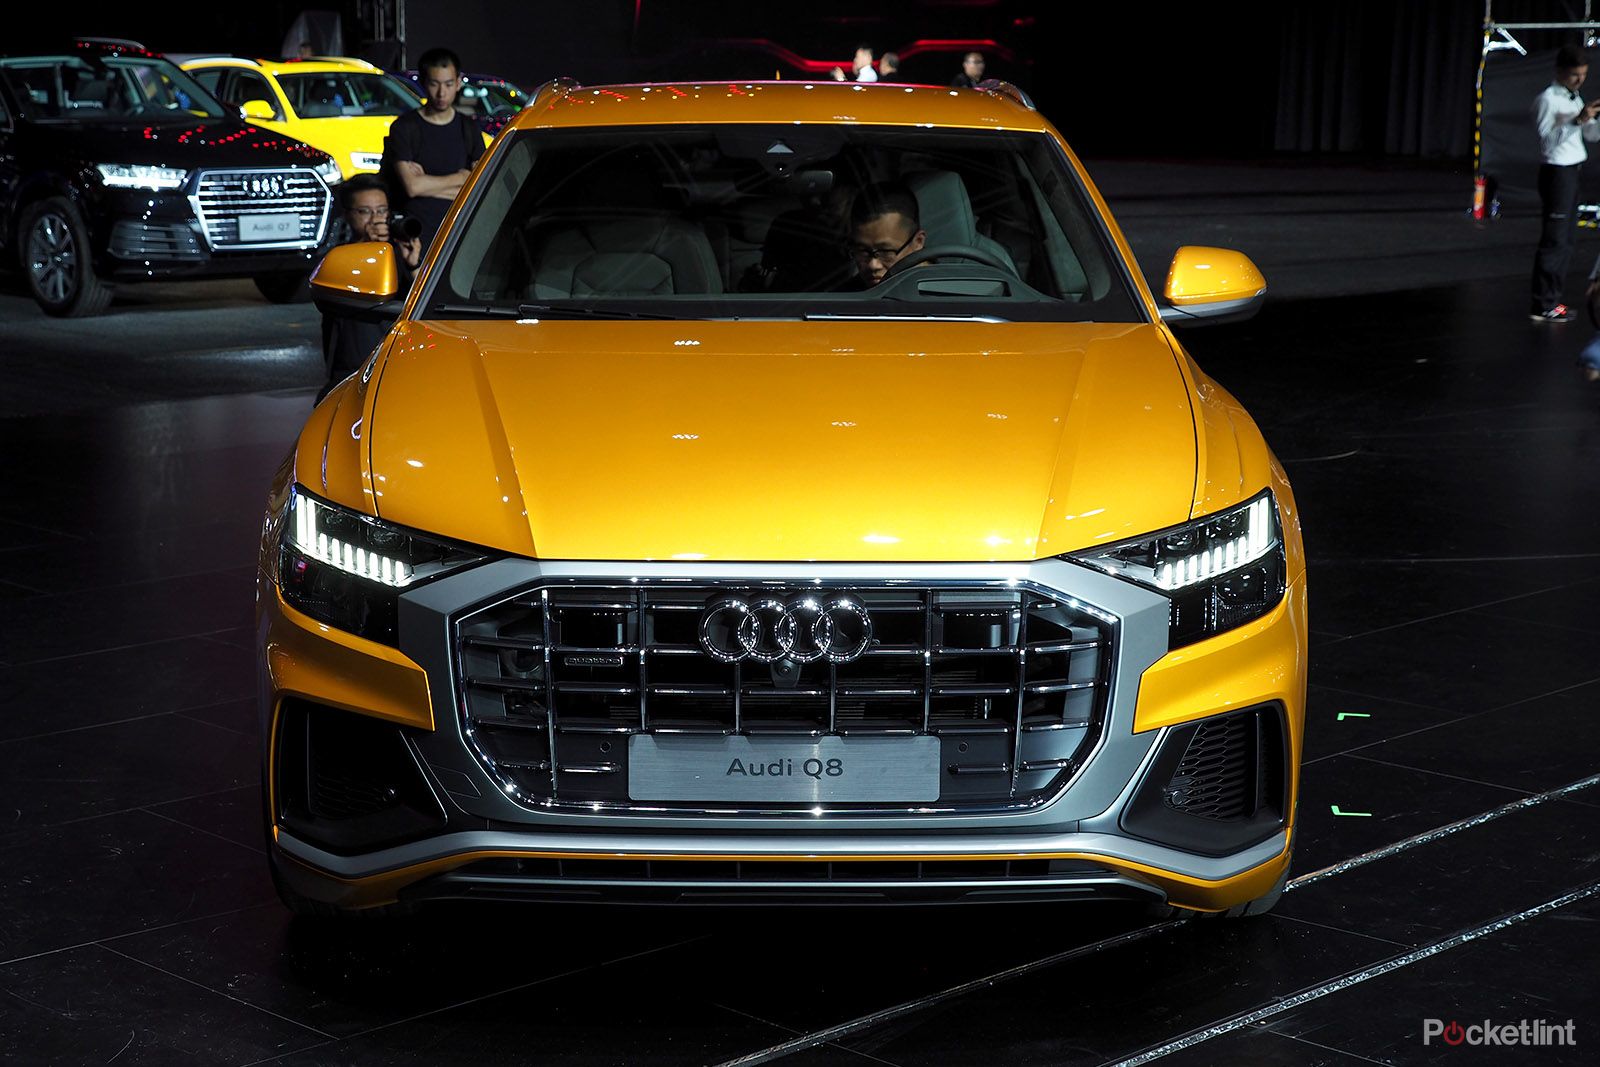 Audi Q8 review lead image 1